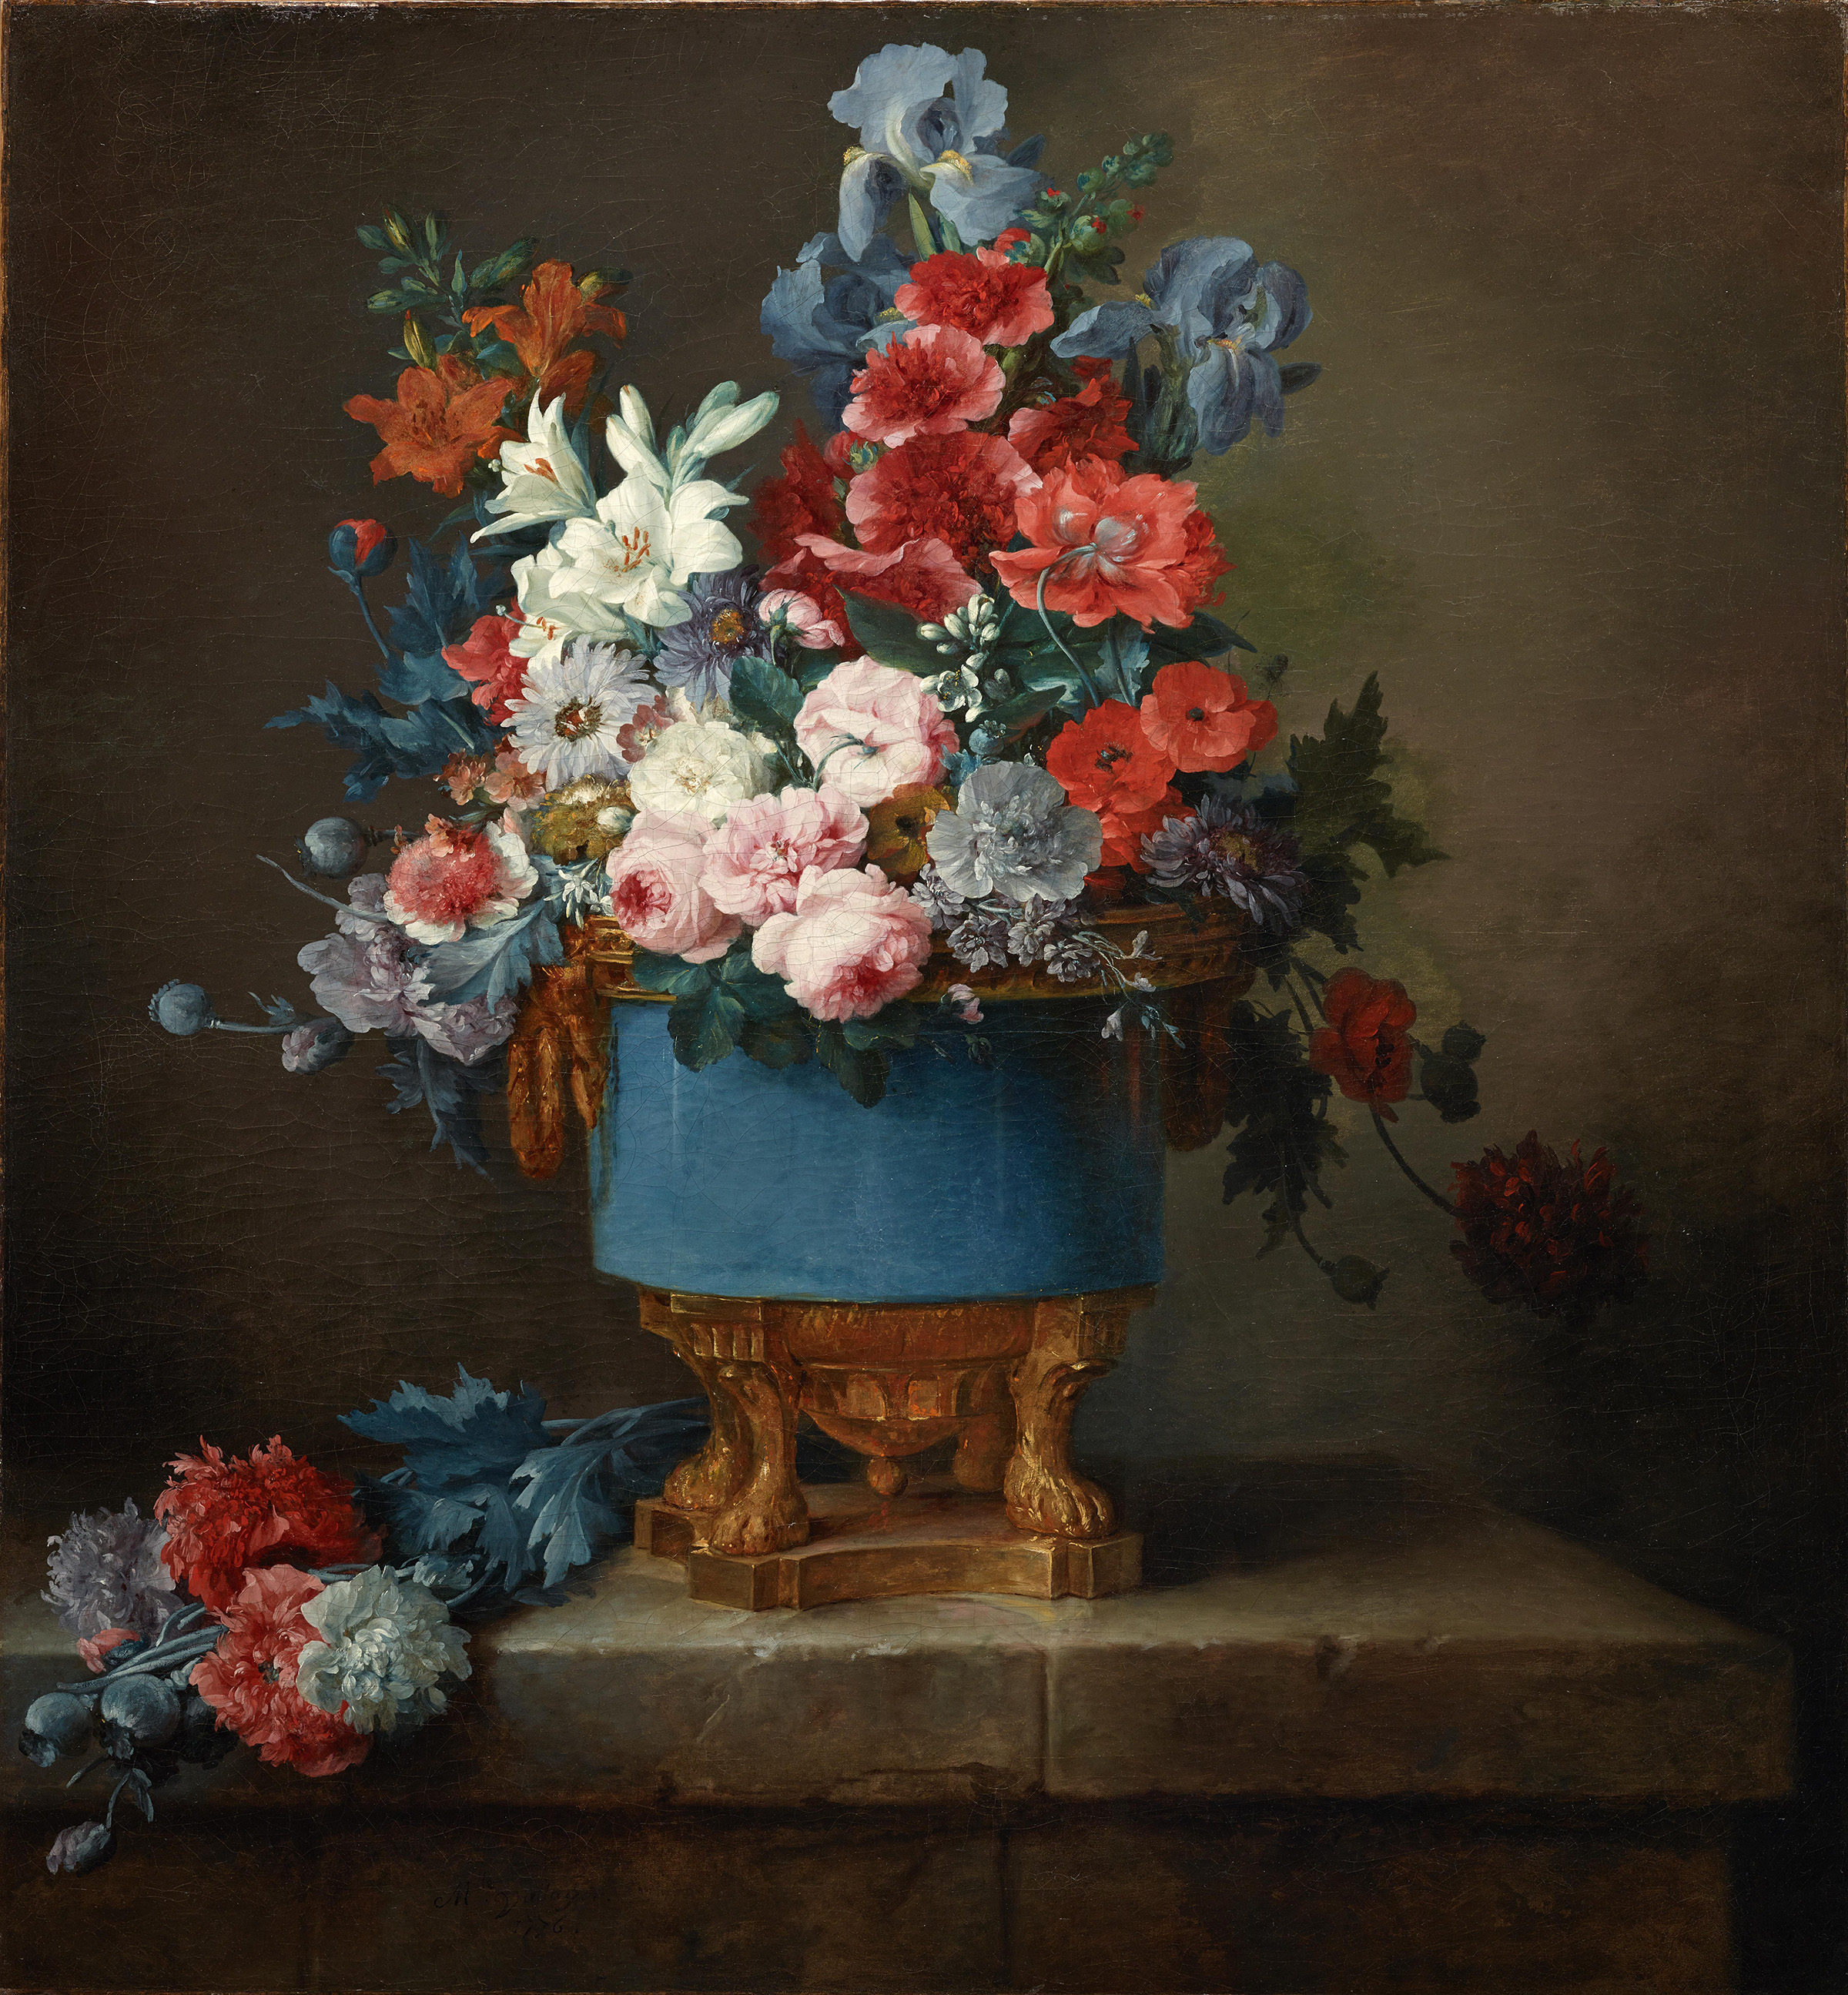 Blomsterbukett i en blå porslinsvas by Anne Vallayer-Coster - 1776 - 122,24 × 113,35 cm 